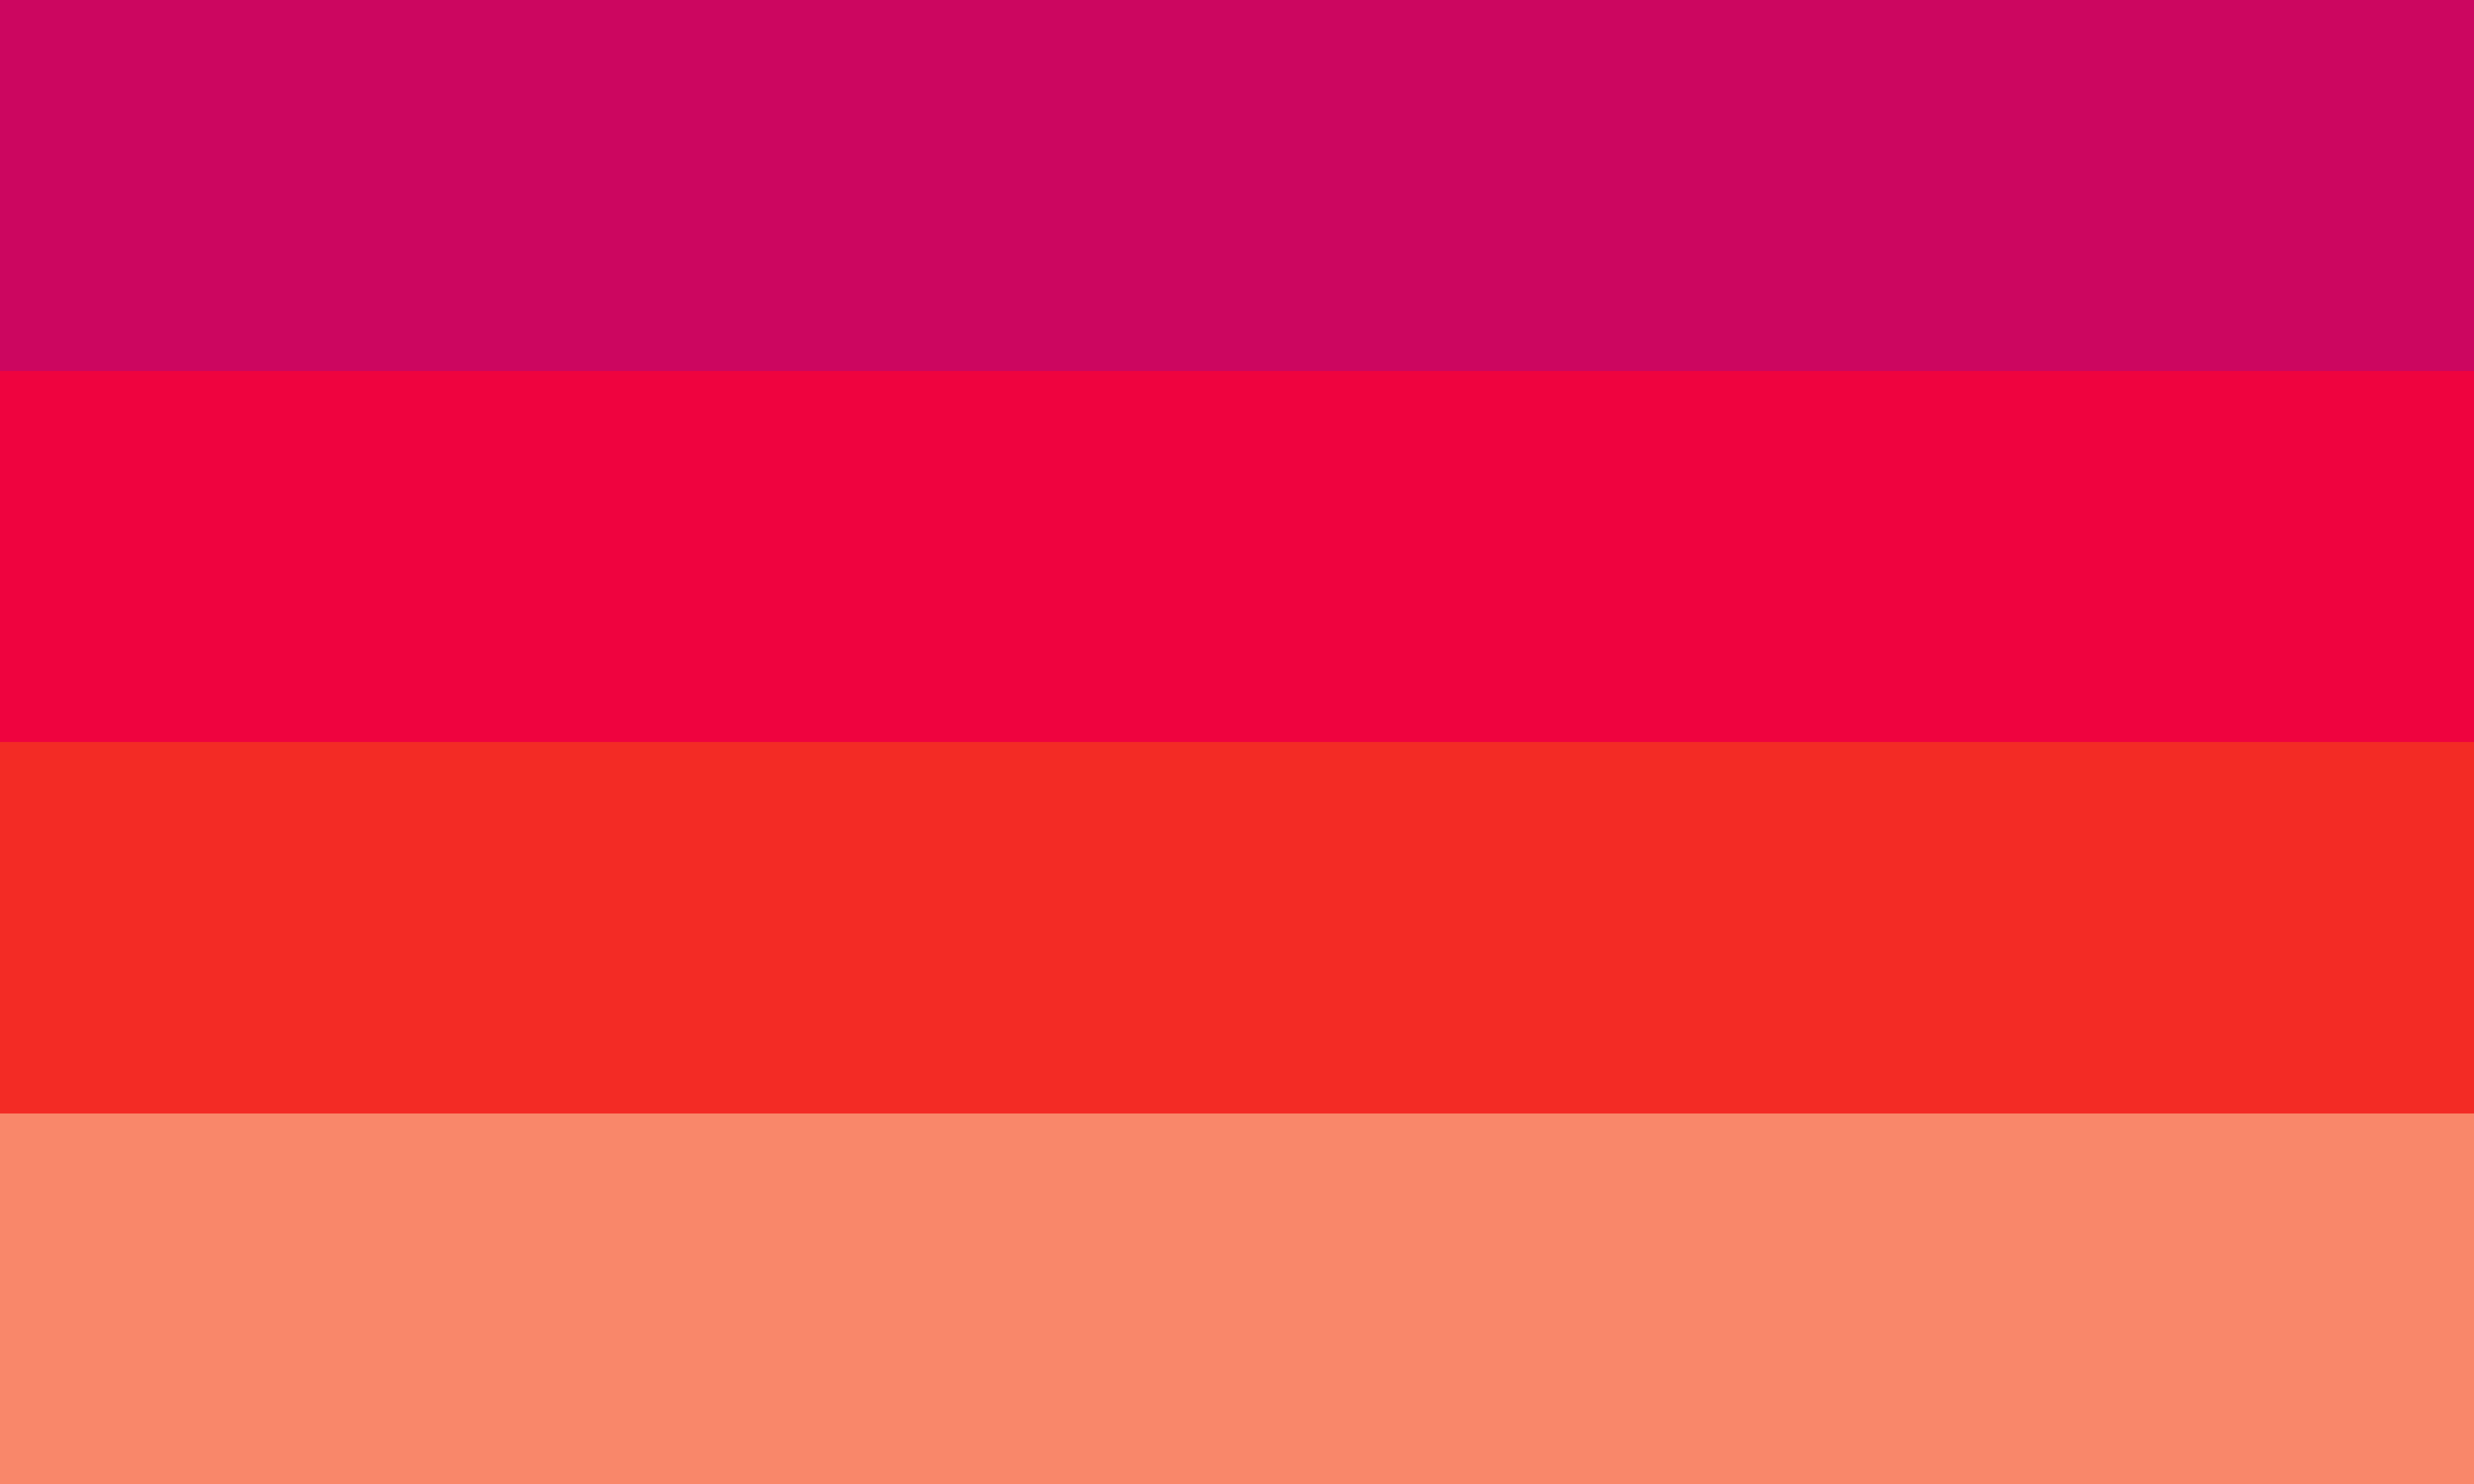 Um retângulo composto por 4 faixas horizontais do mesmo tamanho, nas cores rosa escura, rosa avermelhada, vermelha e vermelha clara.